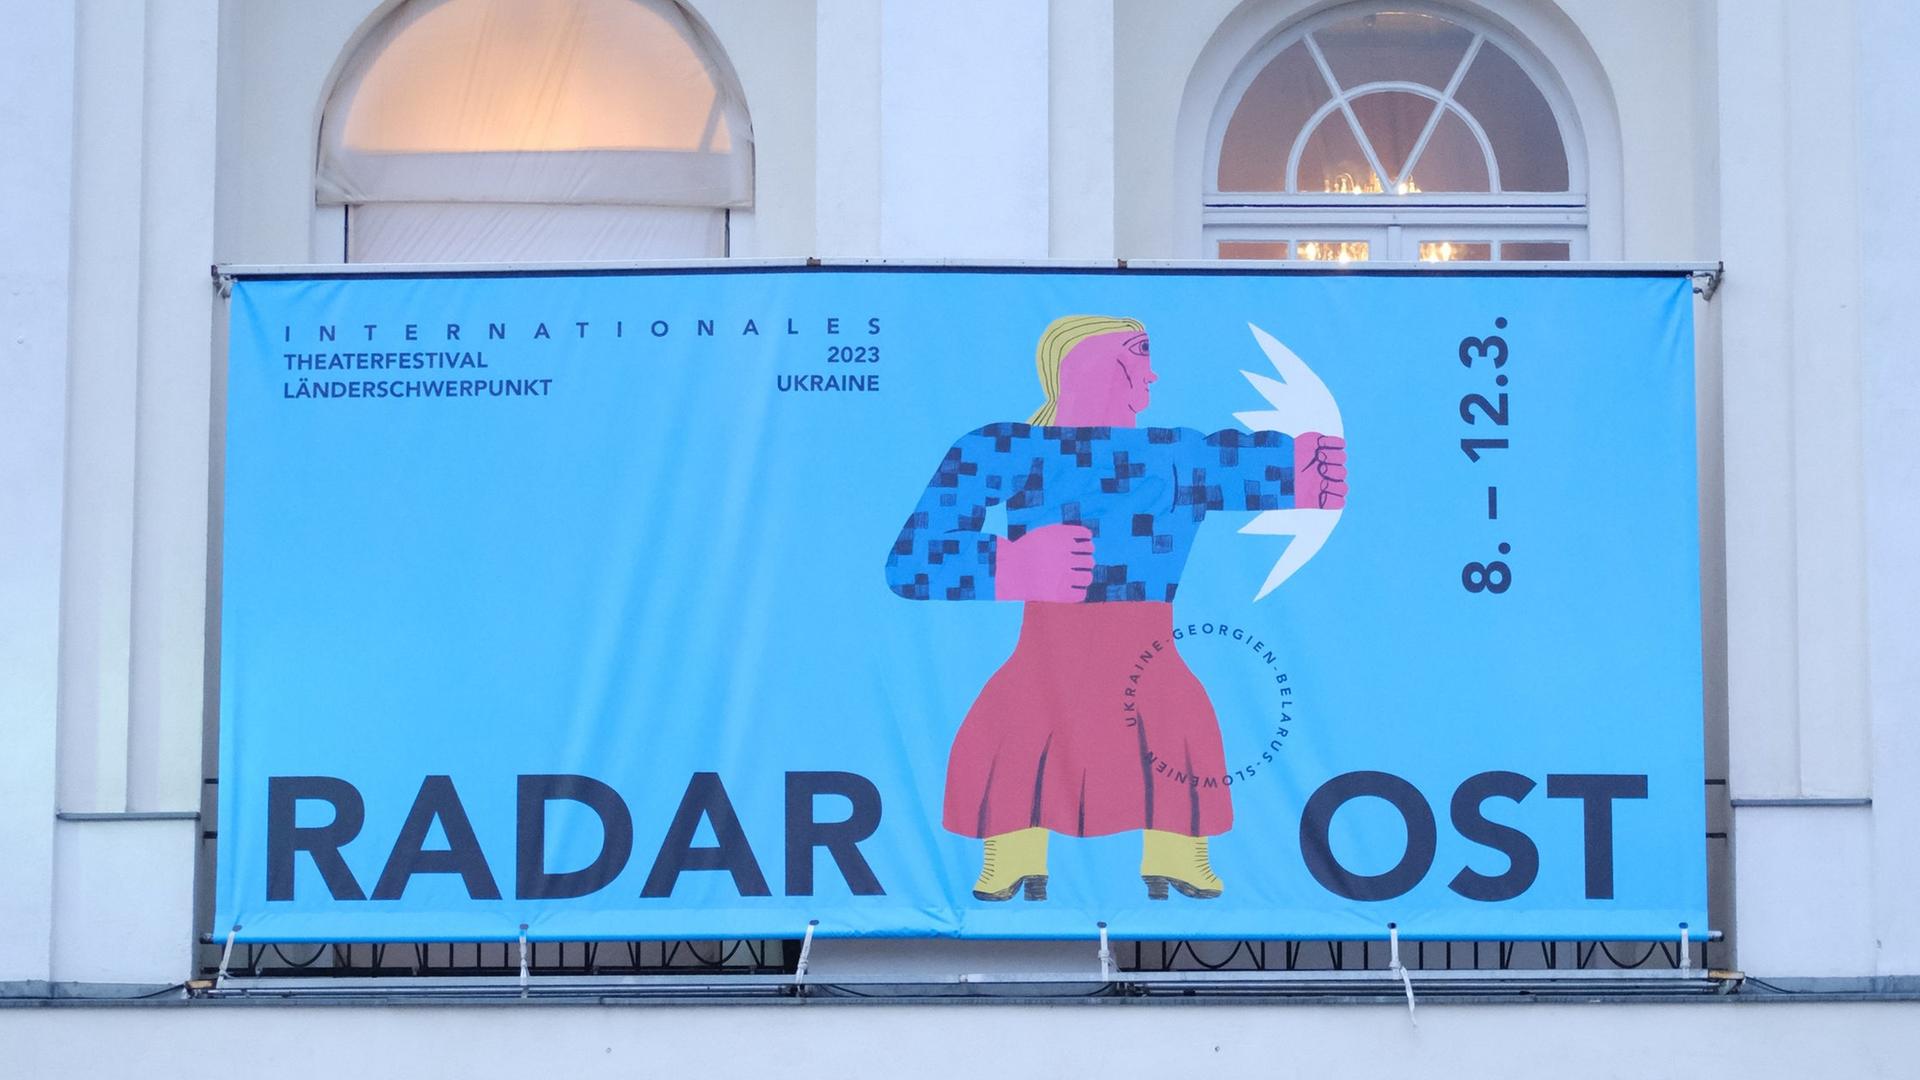 Über dem Eingang des deutsches Theaters hängt das Festivalplakat von "Radar Ost" mit einer Figur auf blauem Grund, die einen Faustschlag in Richtung Osten vollführt.